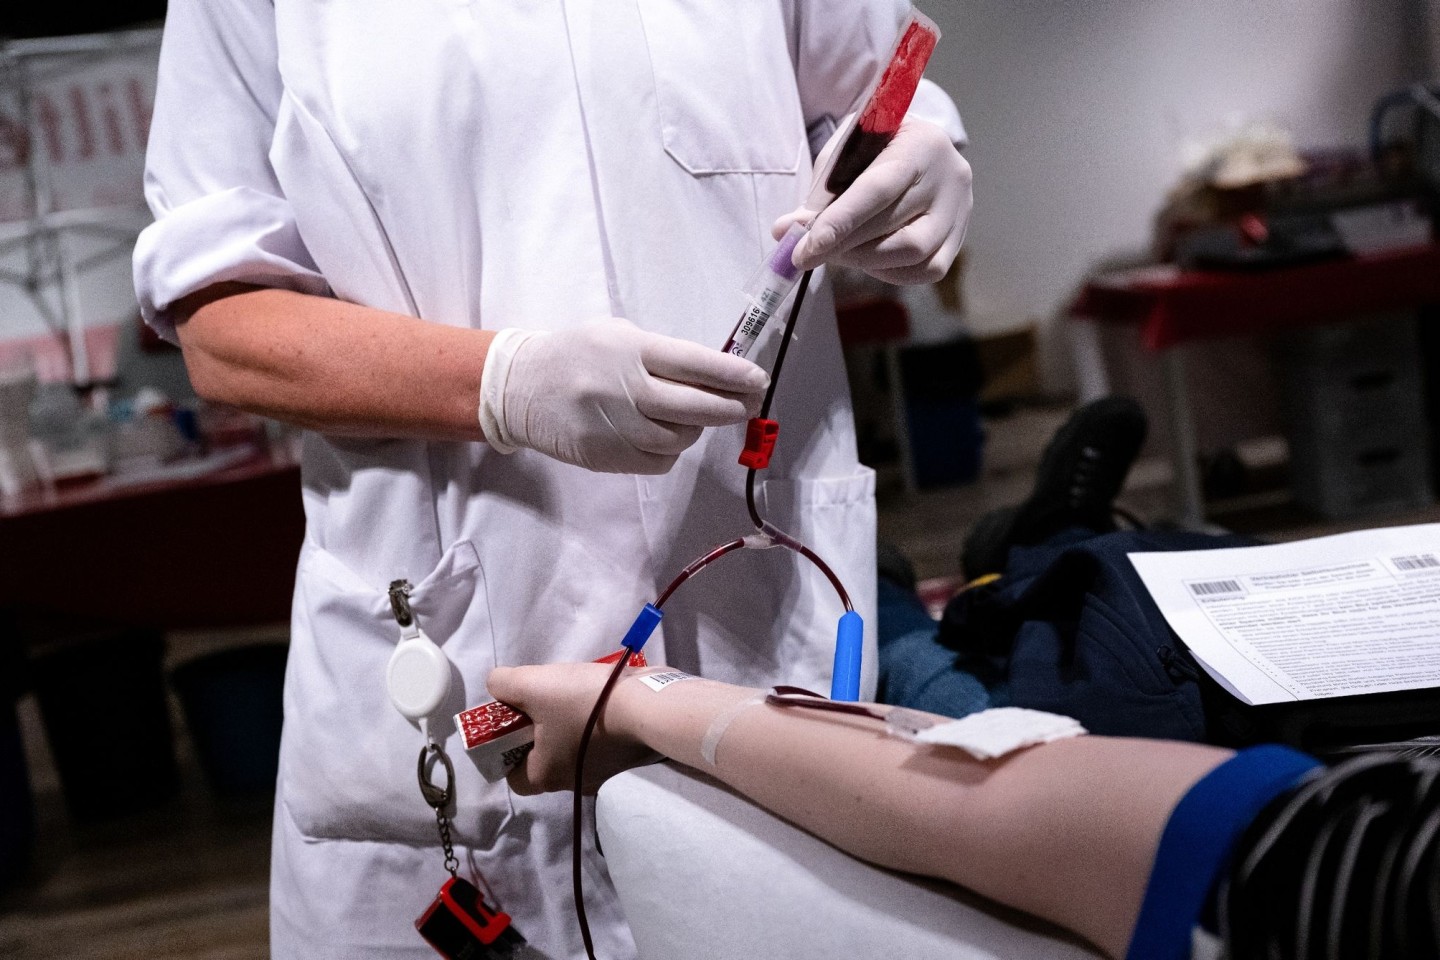 Die Bereitschaft zur Blutspende sinkt seit Jahren - vor allem die junge Generation ist schwer zu erreichen.